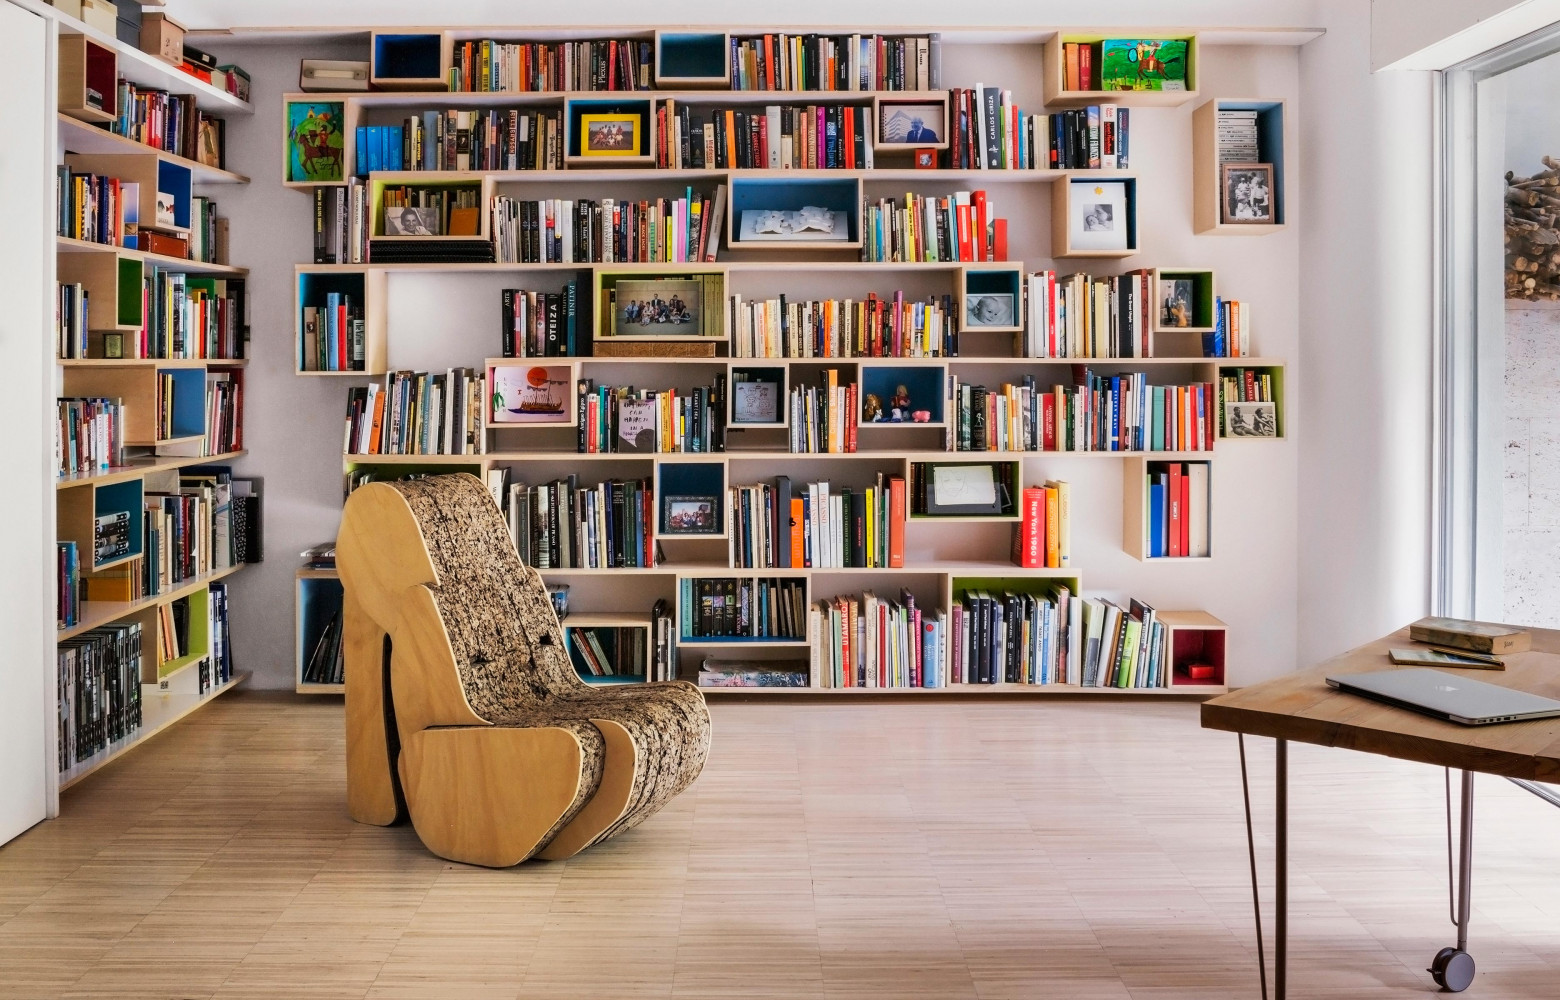 Dans le coin bibliothèque, où les membres de la famille peuvent s’isoler pour travailler, chaise « Shooz...